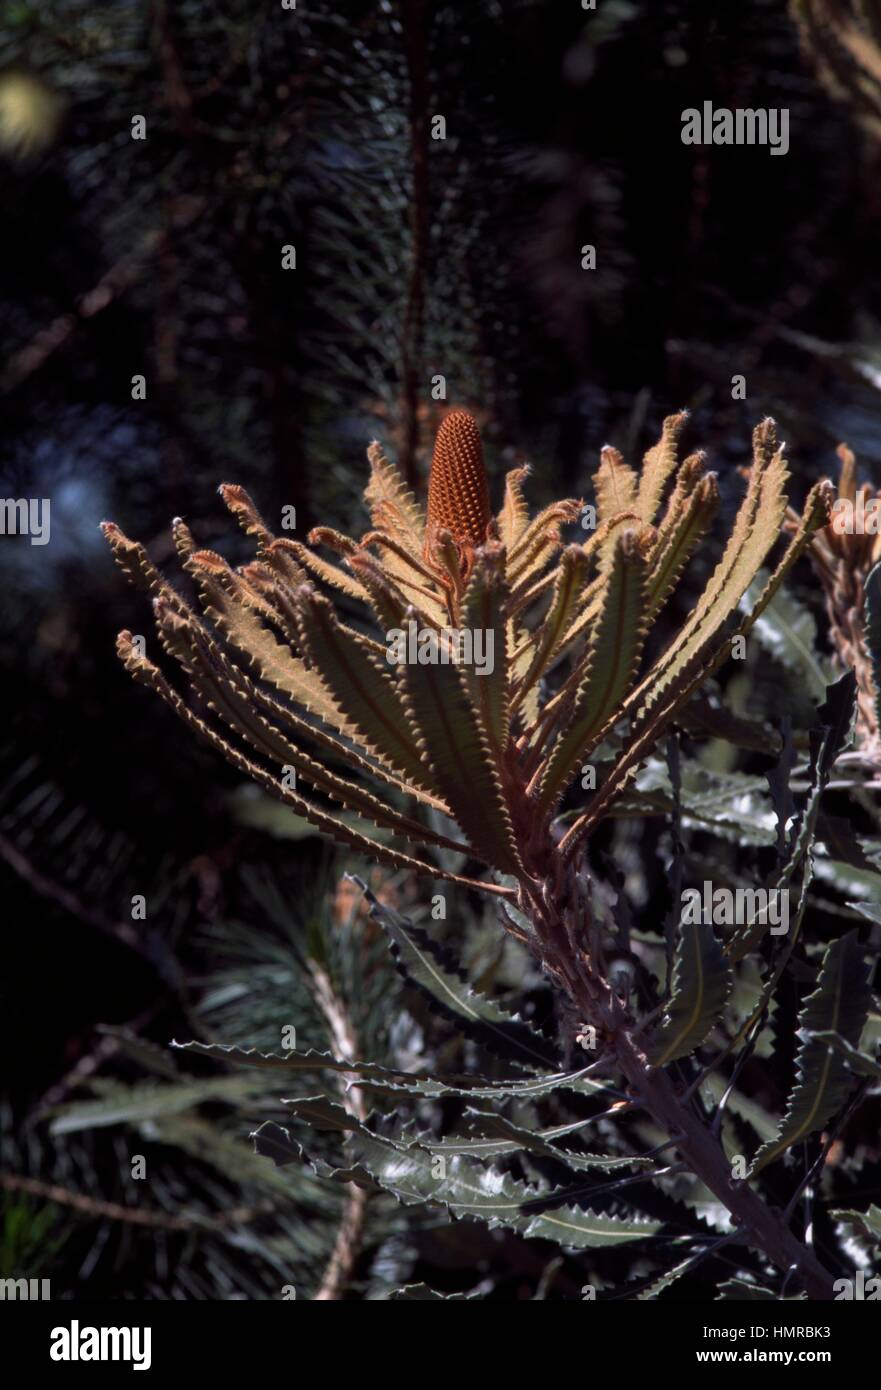 Burdett's Banksia (Banksia burdettii), Proteaceae. Stock Photo